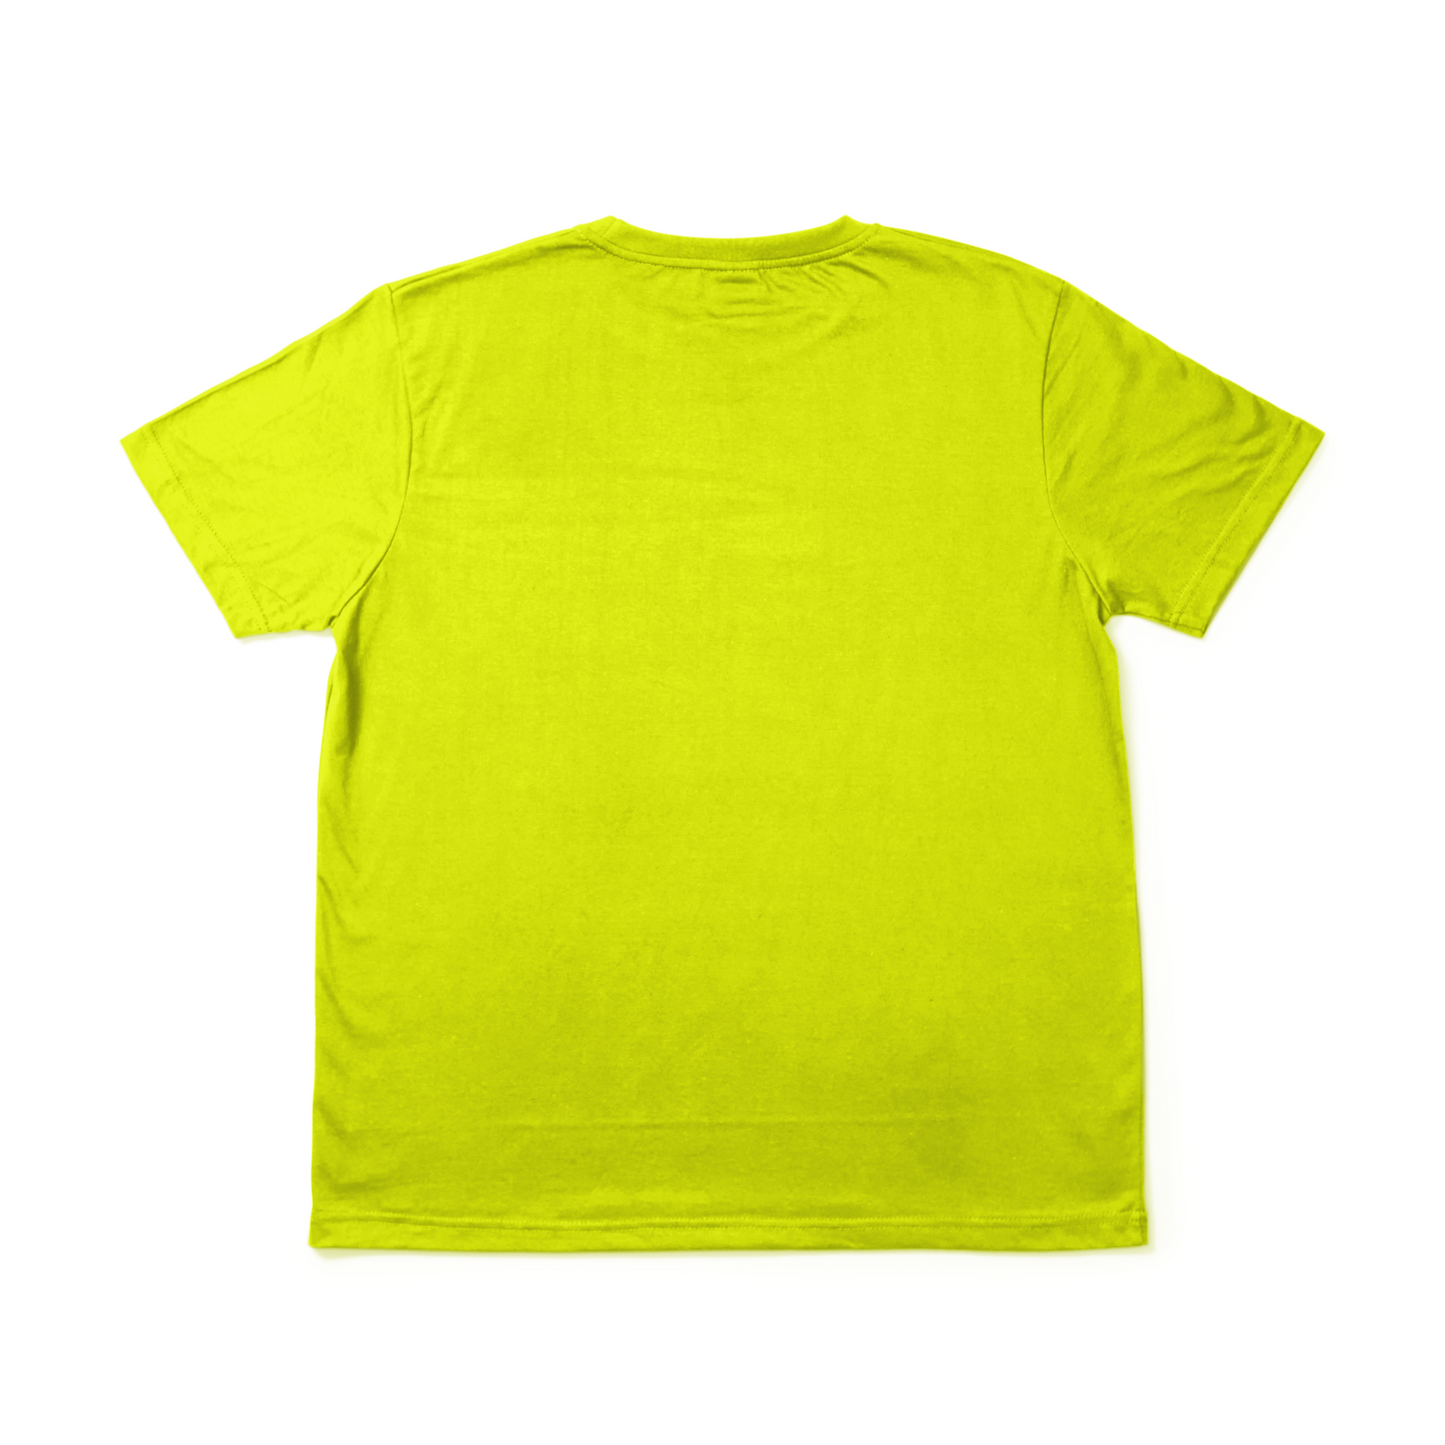 Sport Fit Hemp Tee - Highlighter Yellow